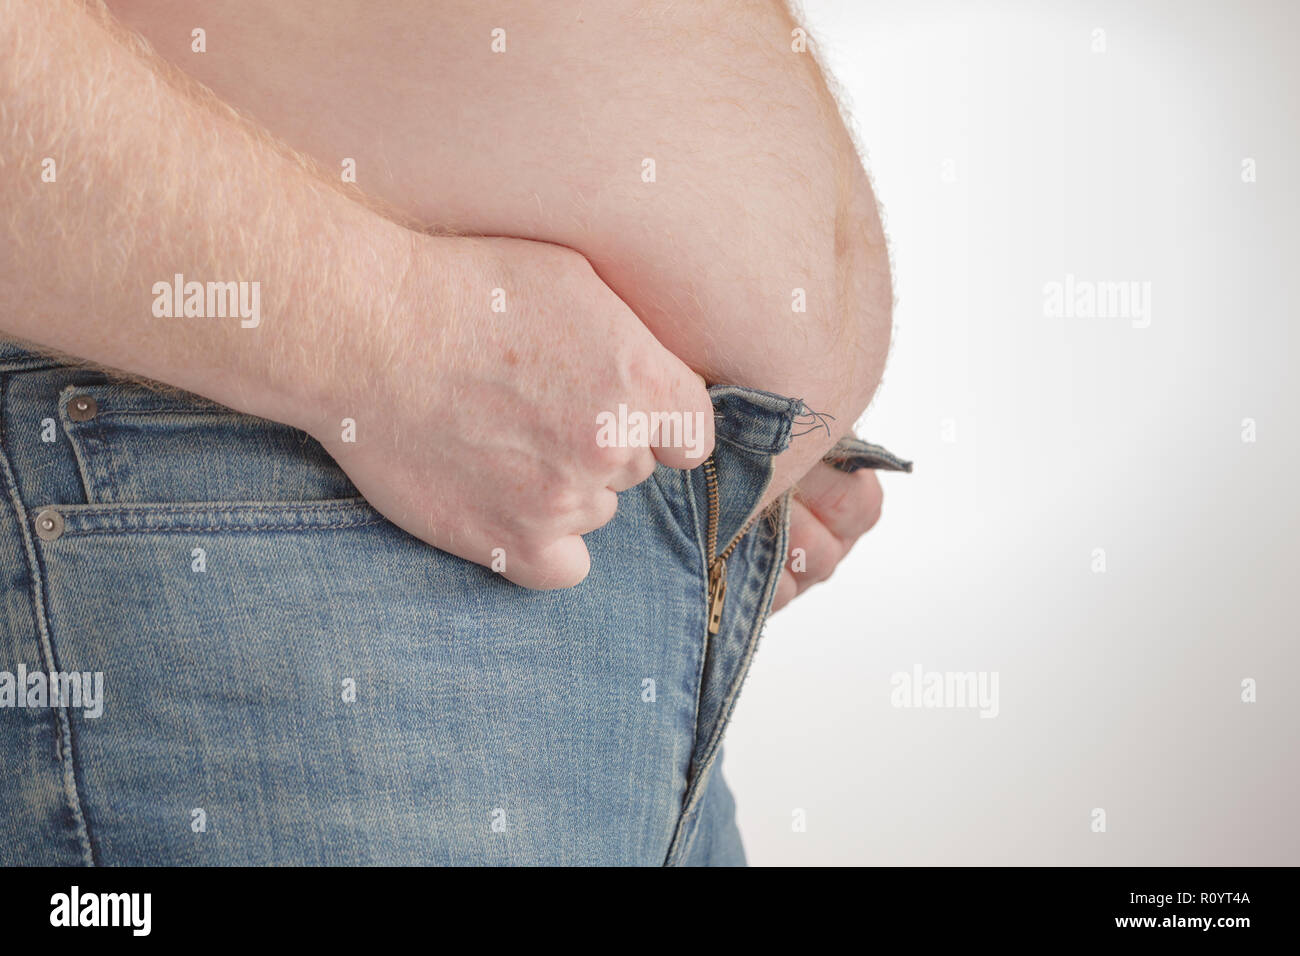 https://c8.alamy.com/comp/R0YT4A/fat-man-trying-to-put-on-pants-big-paunch-R0YT4A.jpg